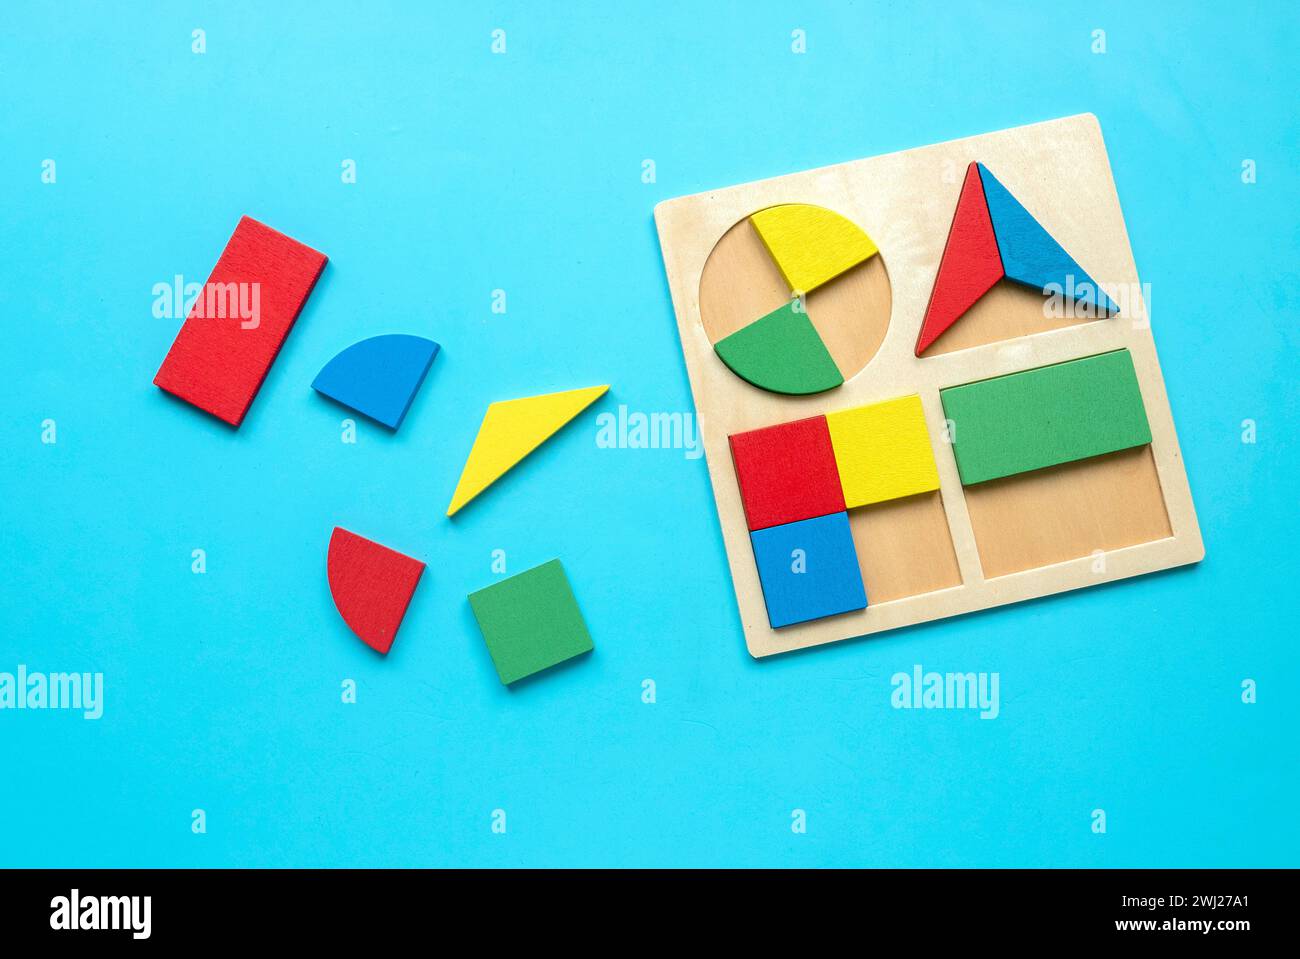 Jouets éducatifs, compétences cognitives, concept de pensée logique de développement d'enfant. Colorés Montessori formes géométriques jouets sur un fond bleu.Sorter Banque D'Images